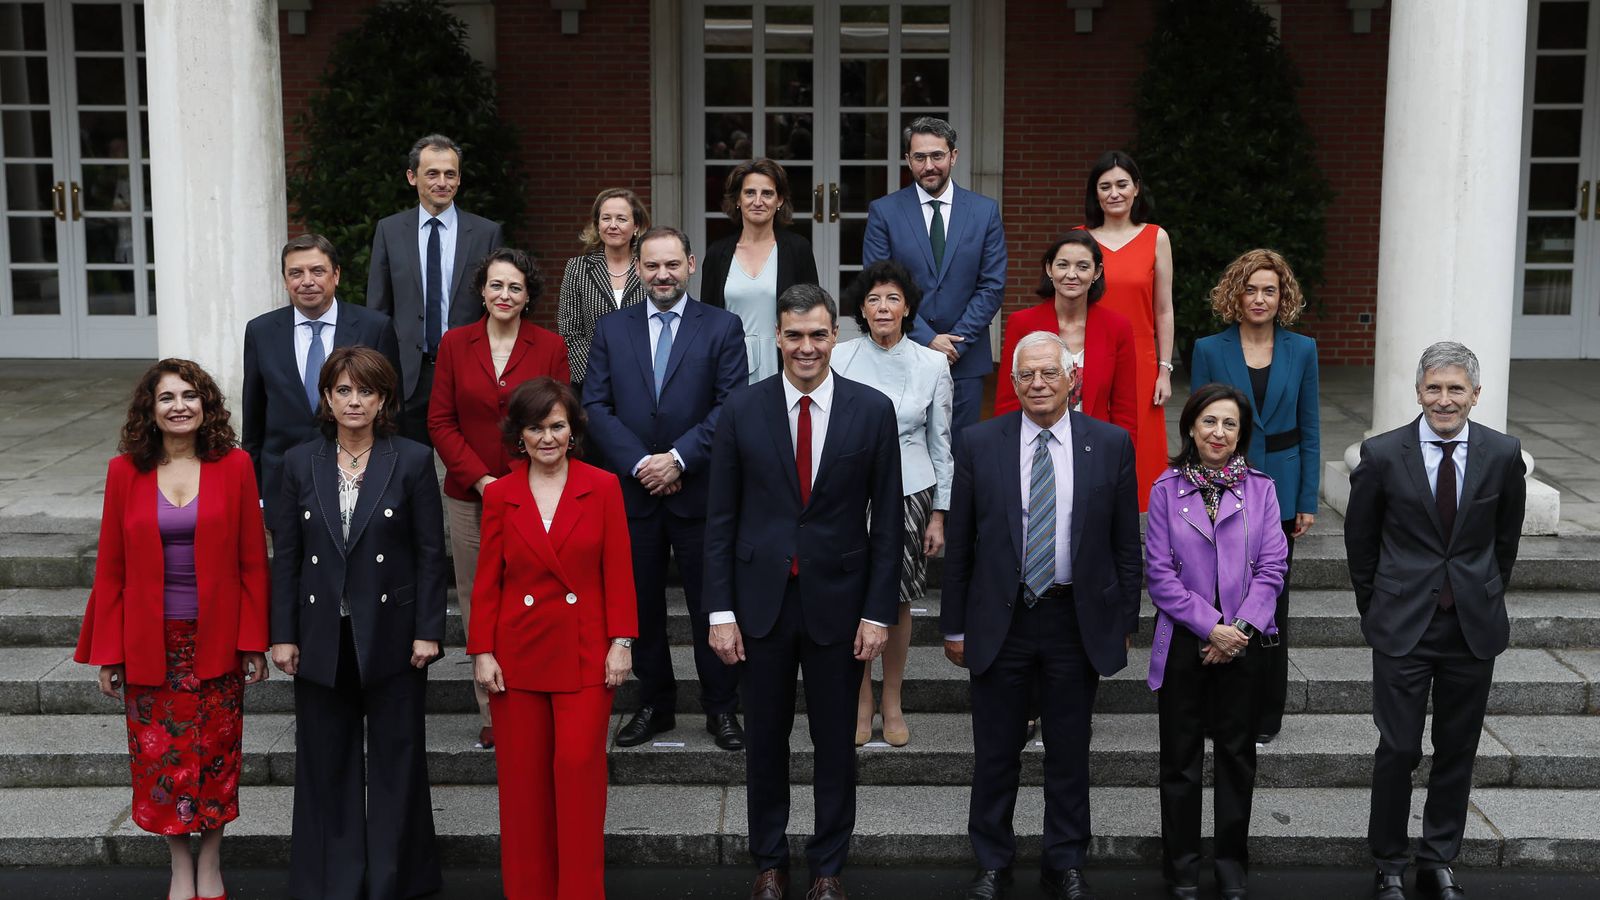 Foto: Imagen de la primera reunión del Consejo de Ministros. (Gtresonline)